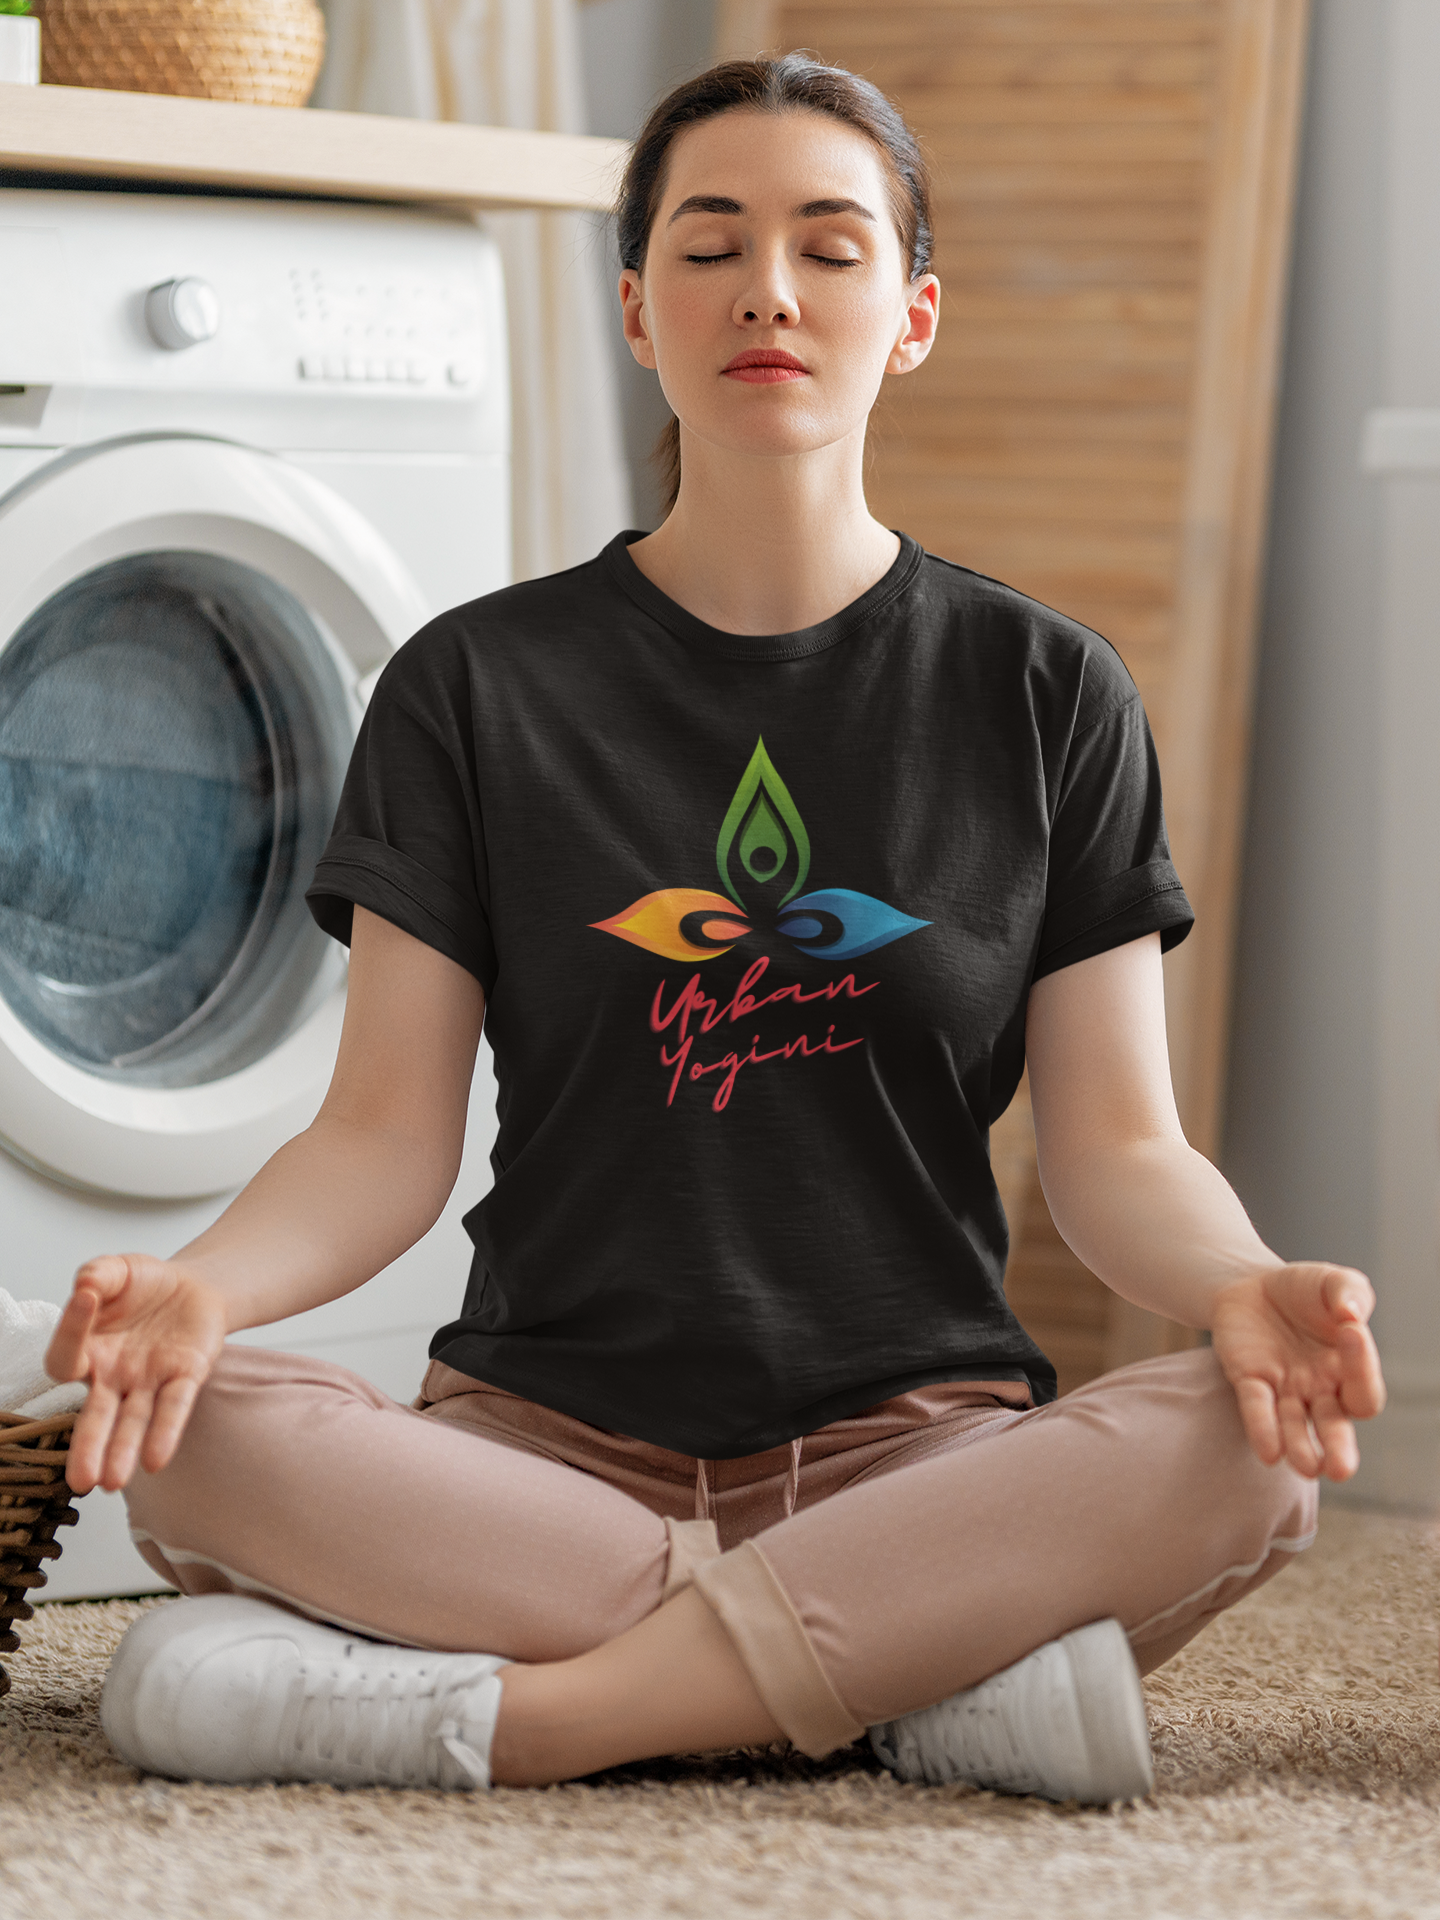 Urban Yogini Women's Yoga T-shirt Black